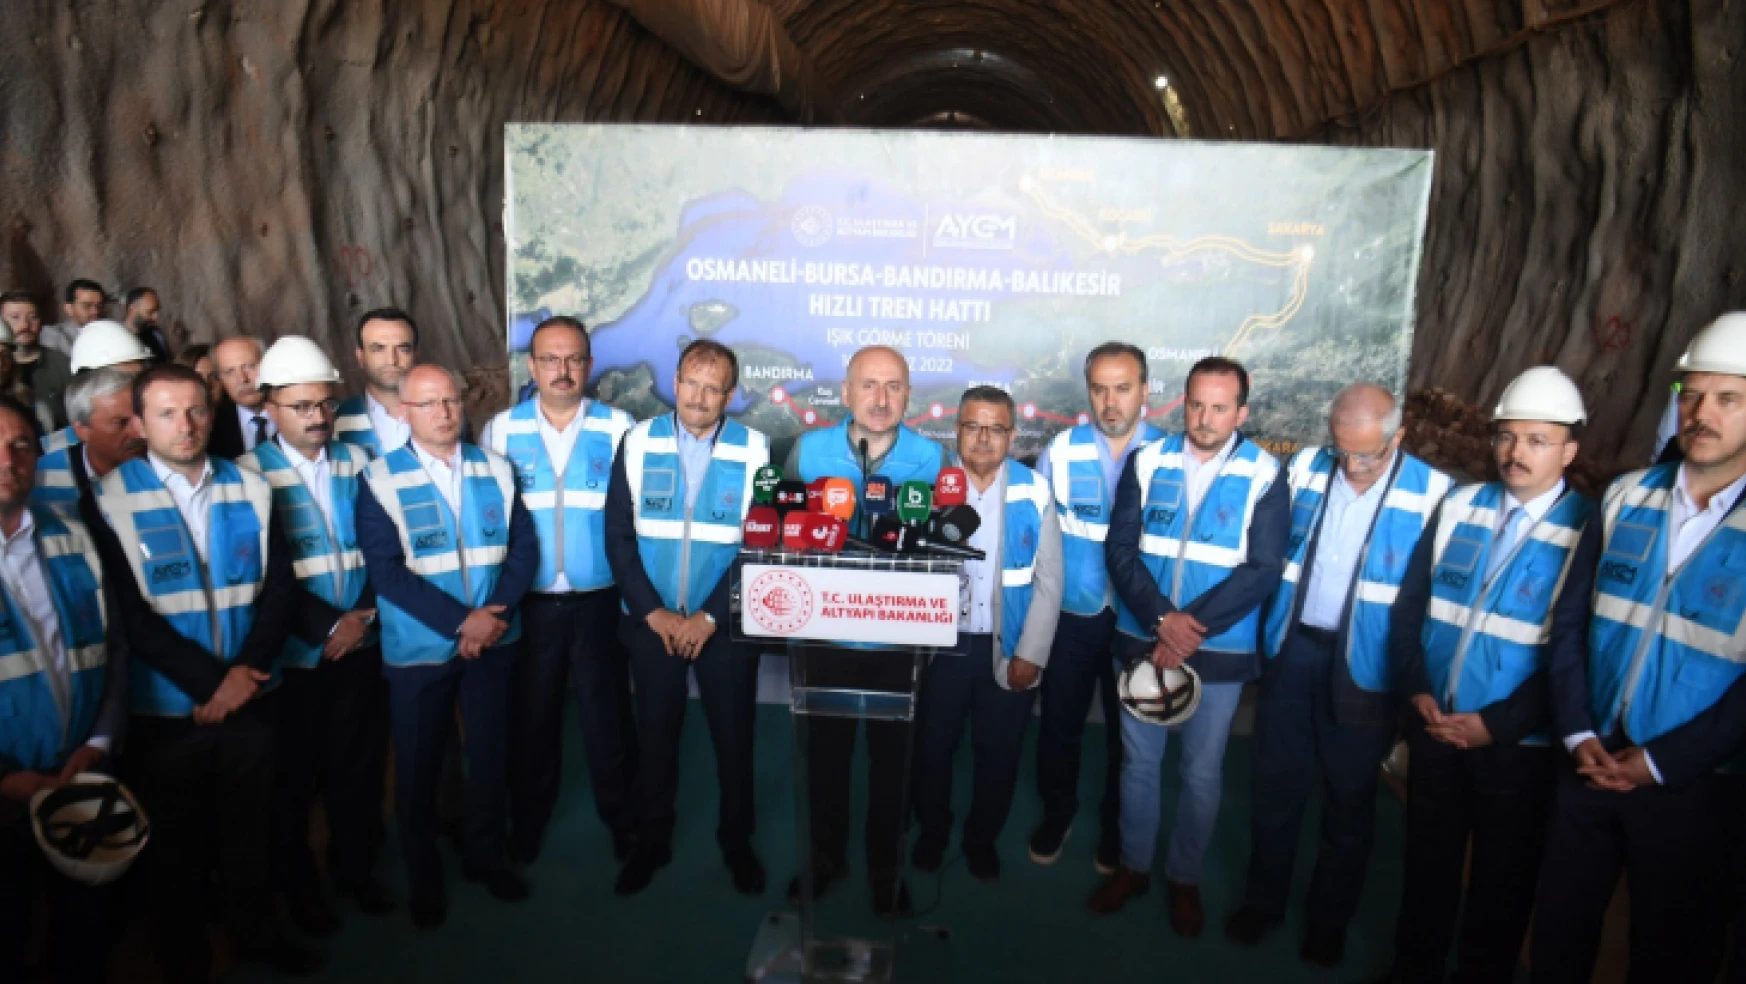 Osmaneli-Bursa-Bandırma-Balıkesir Hızlı Tren Hattı T04 Tüneli Işık Görme Töreni'ne katıldı.